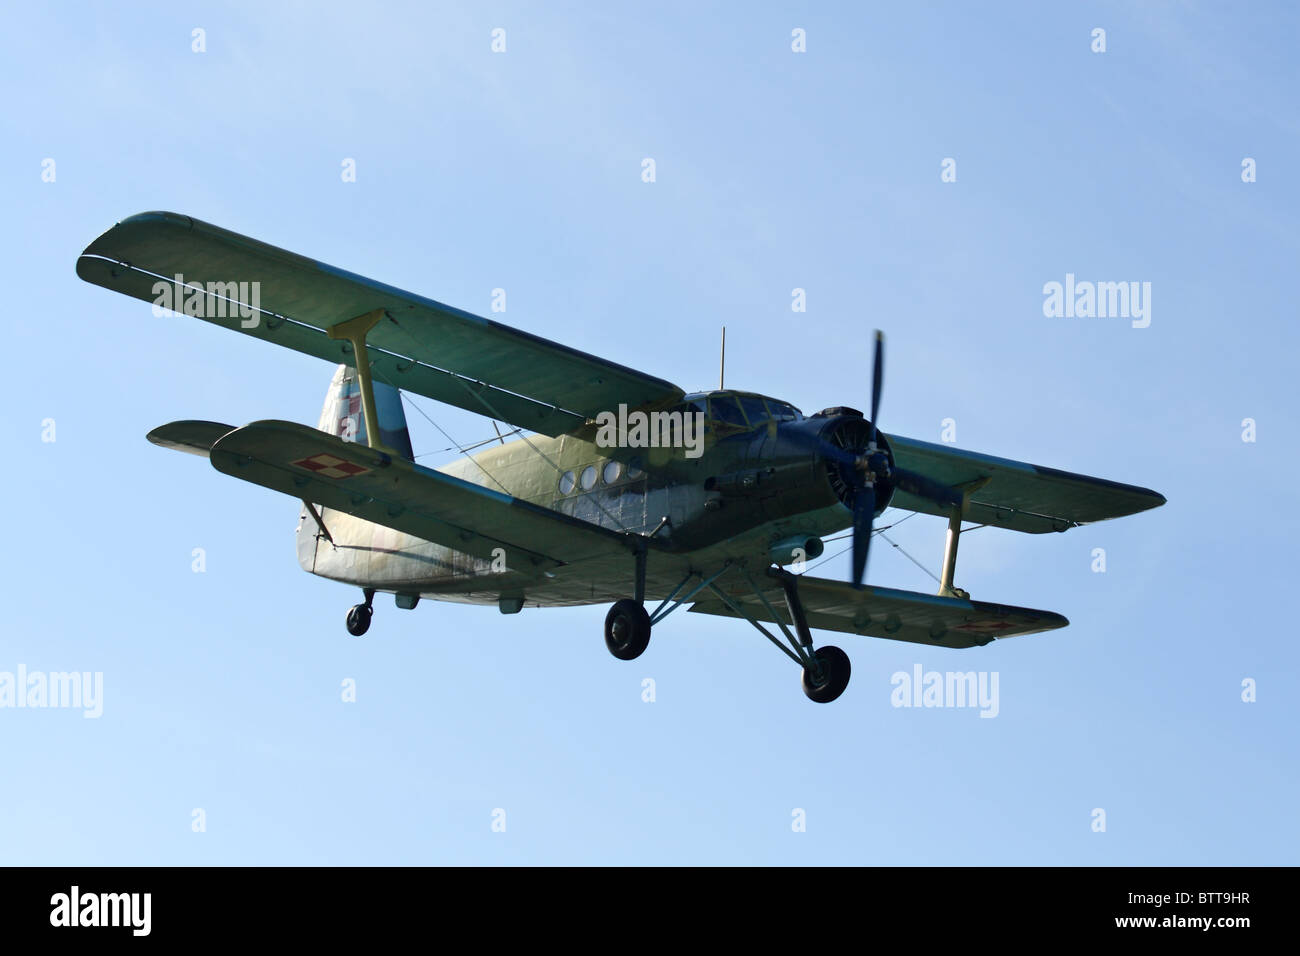 Doppeldecker-Flugzeug, Antonov An-2 in der Luft Stockfotografie - Alamy